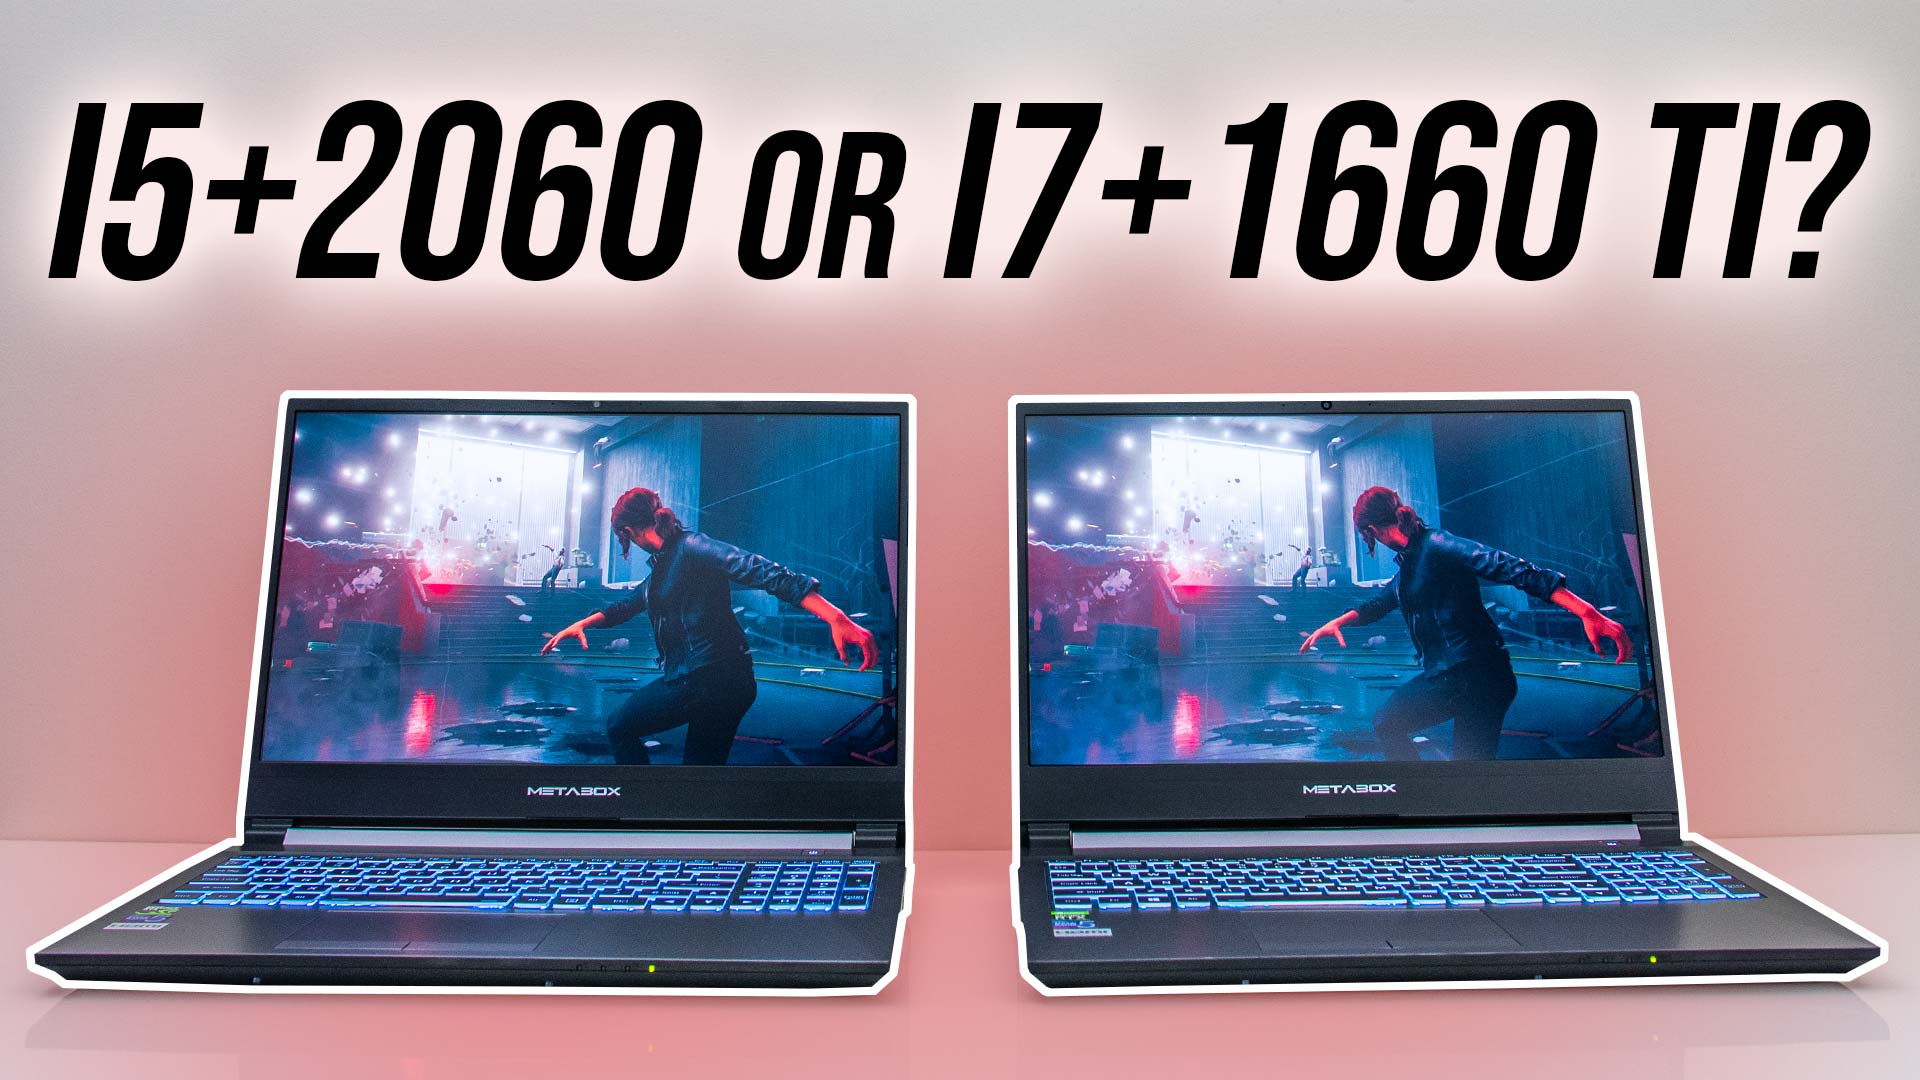 i5+2060 i7+1660 For Gaming Laptop? - Jarrod's